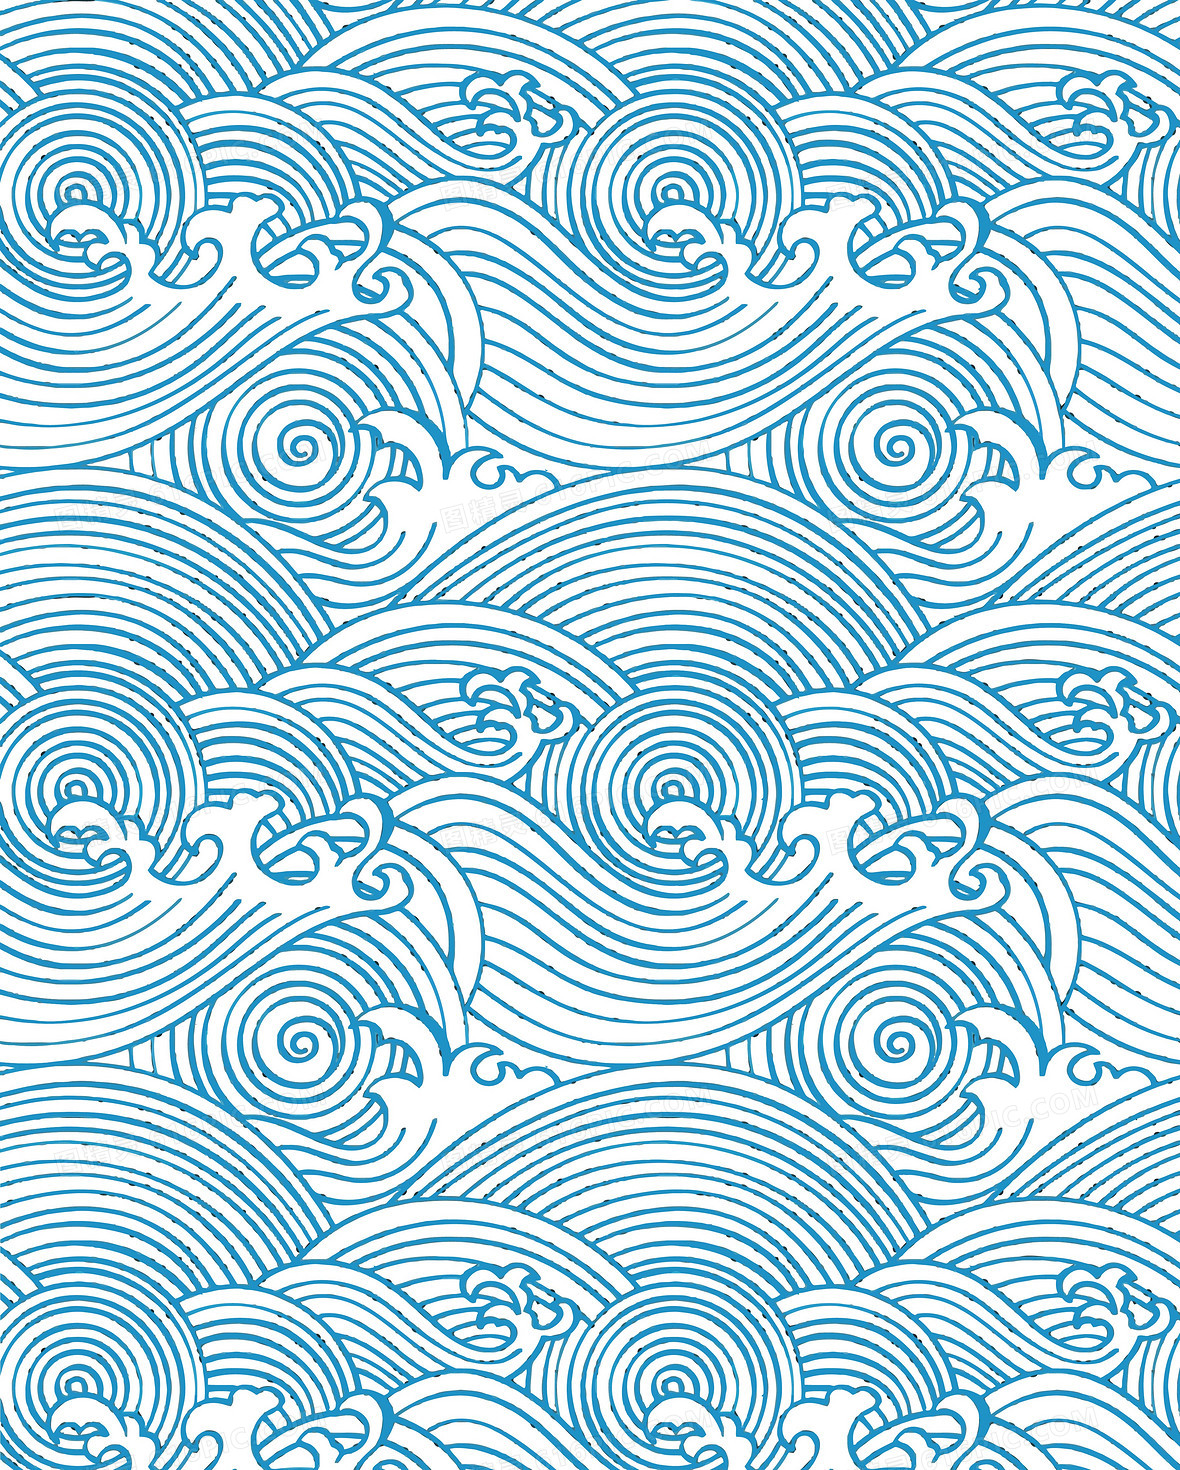 矢量中国风海水纹手绘背景素材3652 × 4551jpgai矢量中国风淡墨山水